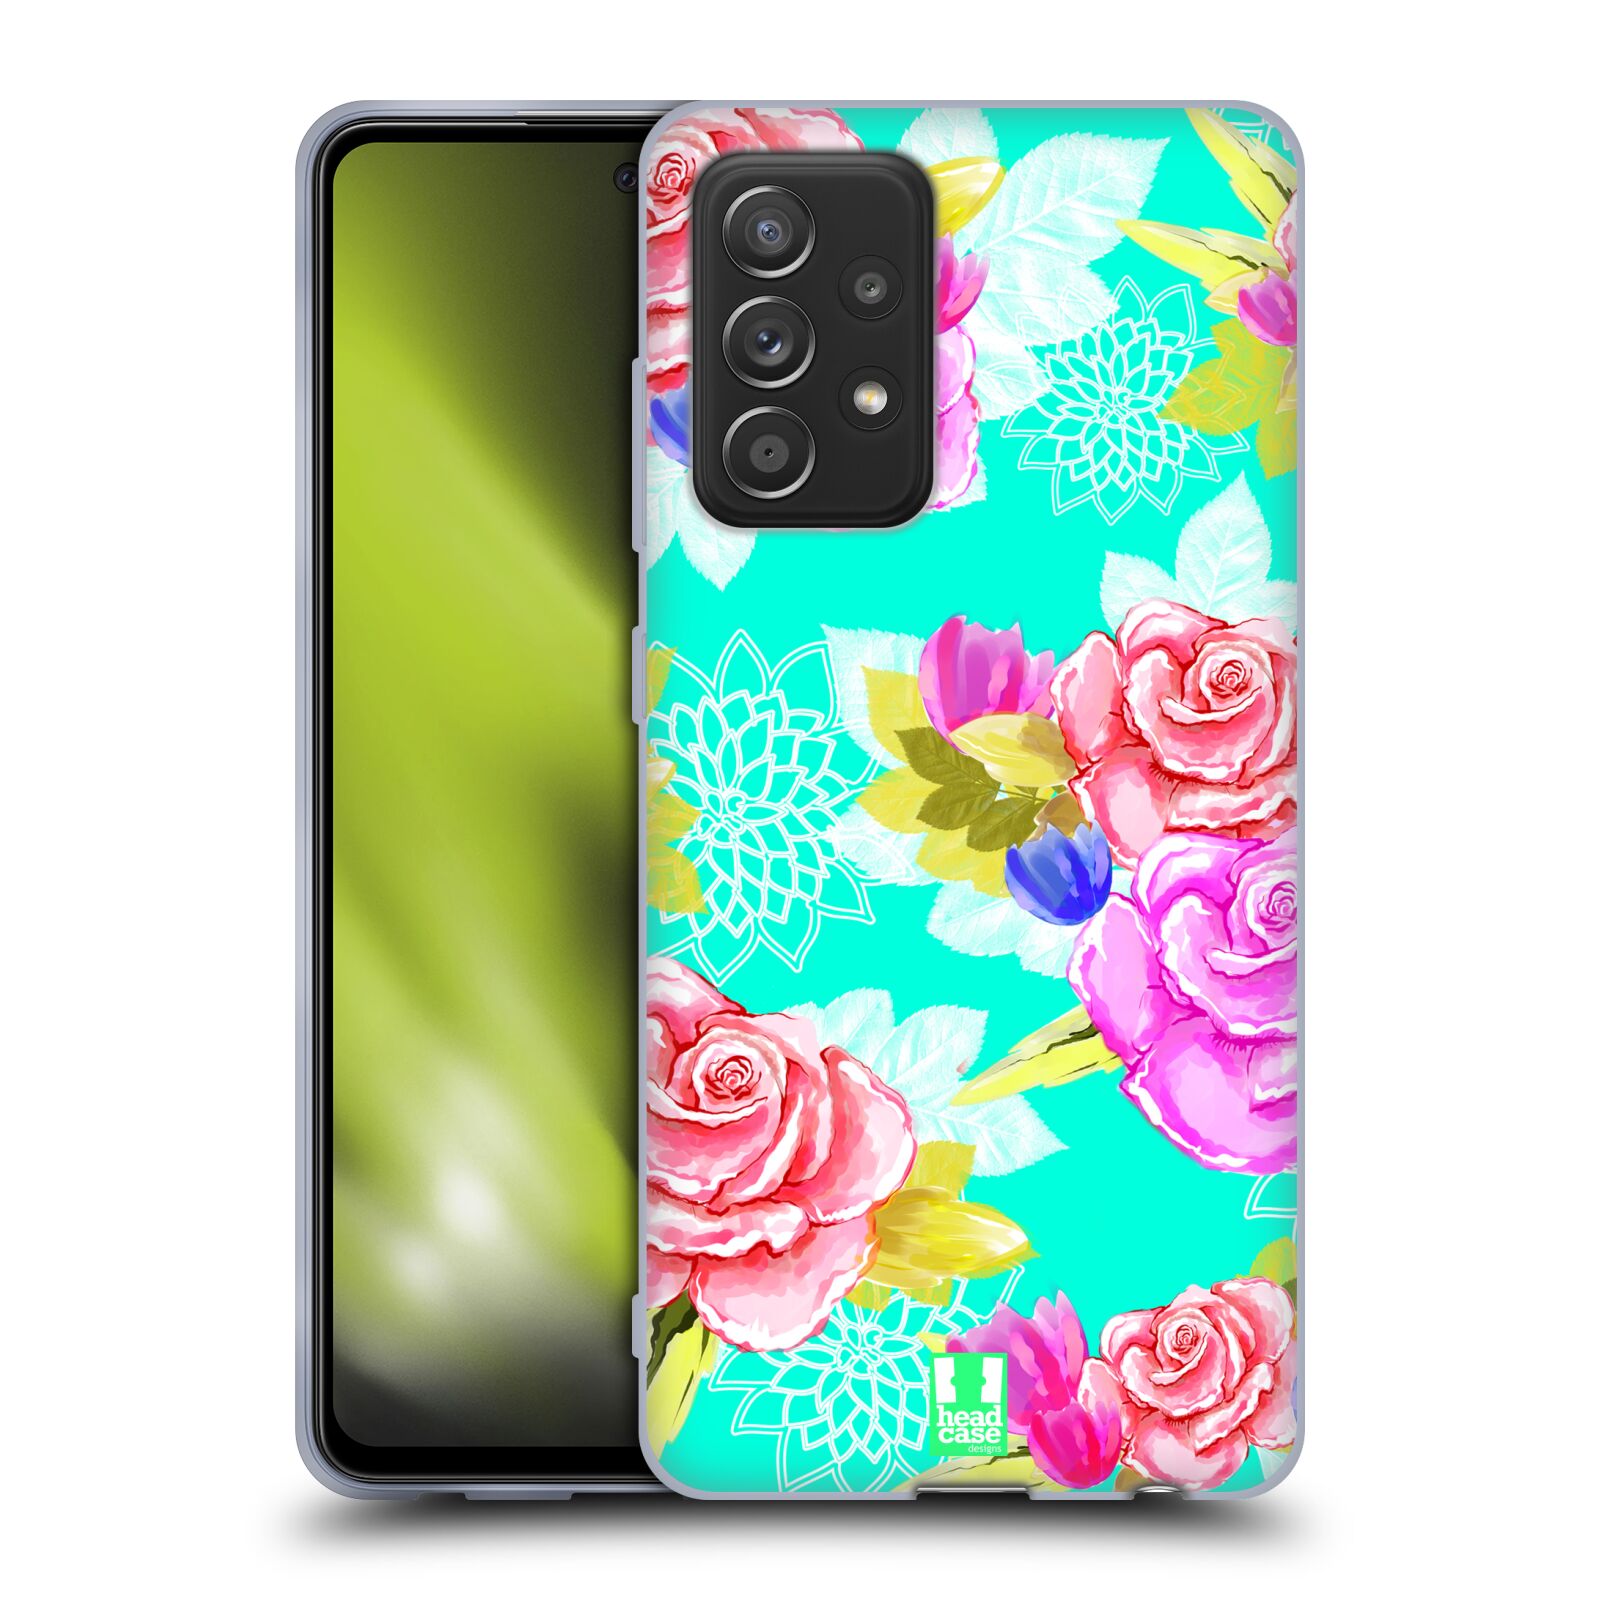 Plastový obal HEAD CASE na mobil Samsung Galaxy A52 / A52 5G / A52s 5G vzor Malované květiny barevné AQUA MODRÁ